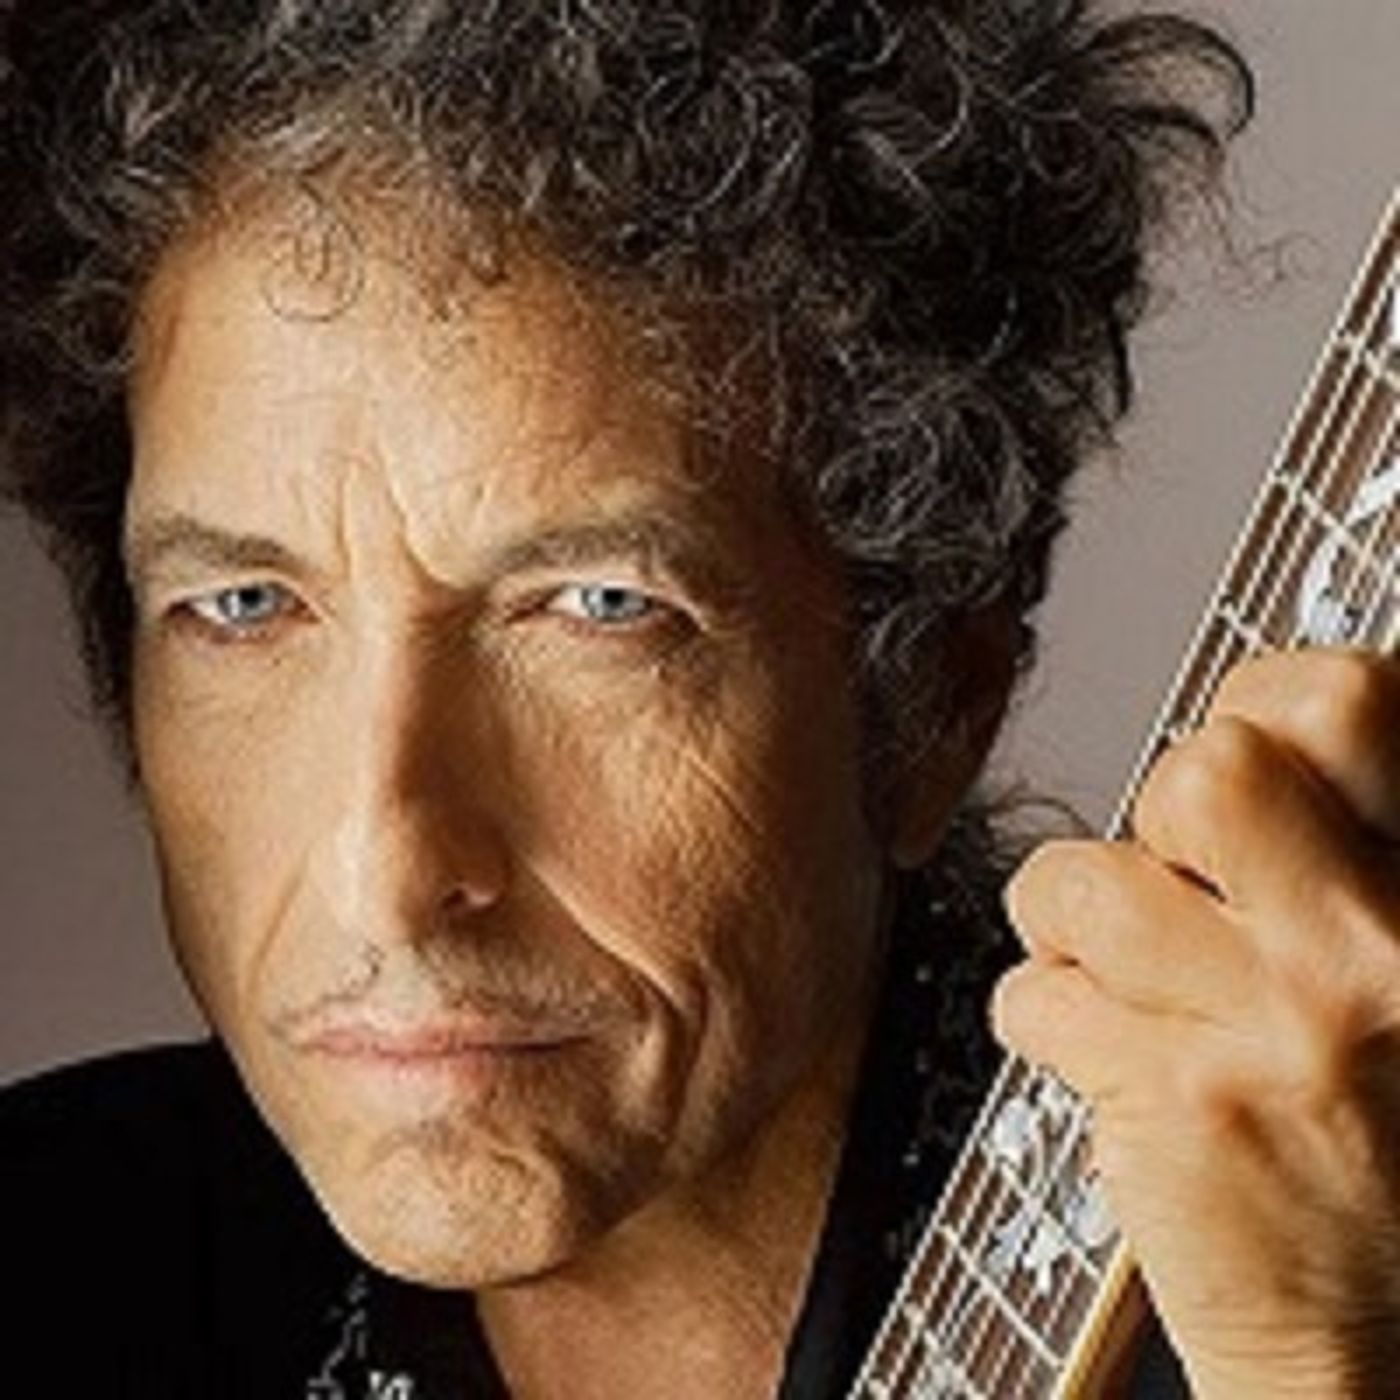 Bob Dylan vieta i cellulari al suo concerto per godere lo spettacolo senza distrazioni